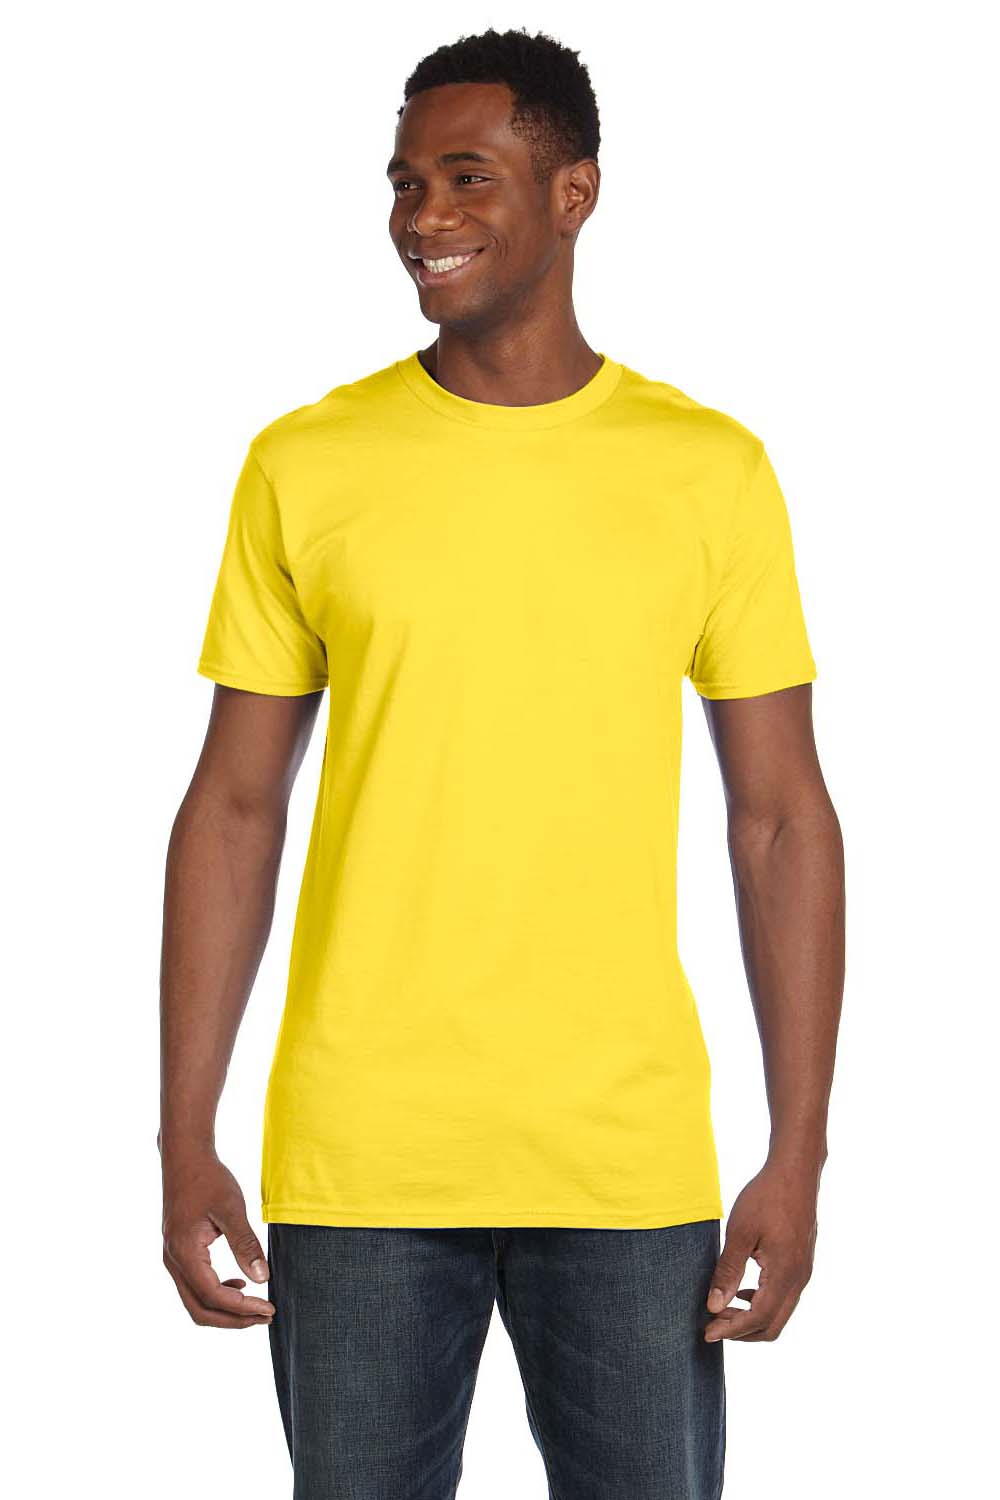 Hanes 4980 Mens Nano-T Short Sleeve Crewneck T-Shirt Yellow Front